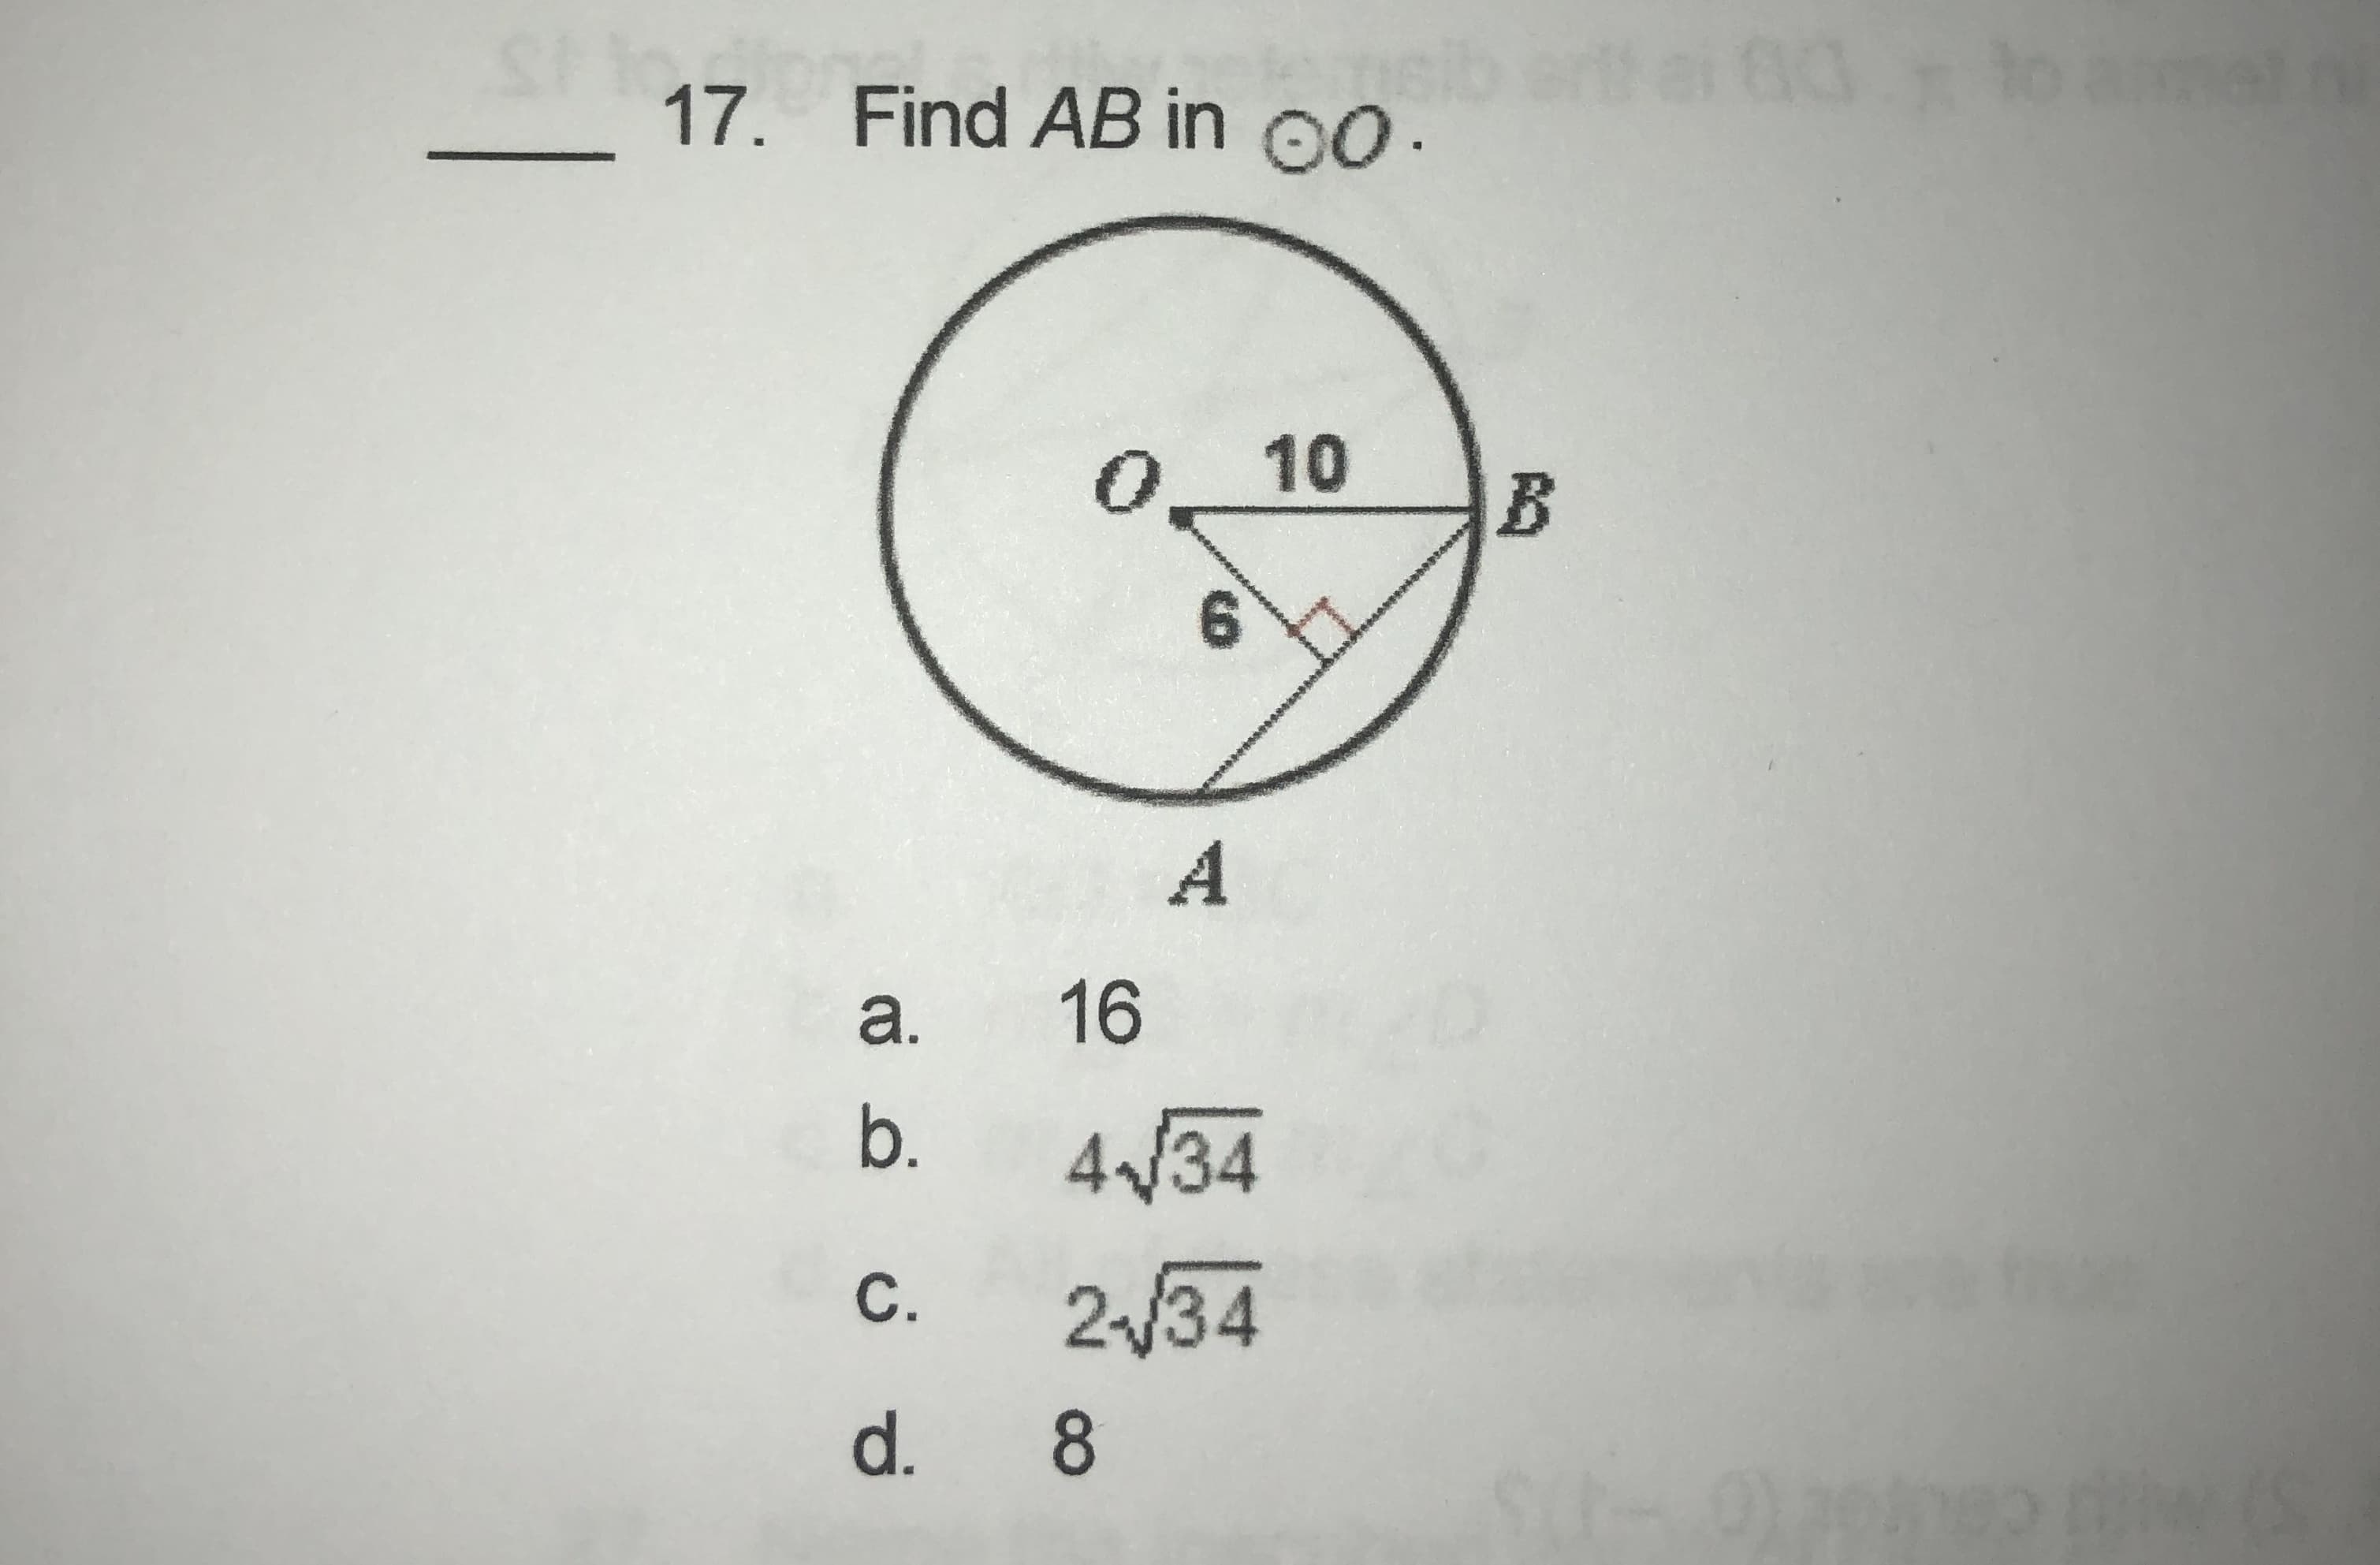 17. Find AB in o.
10
6.
A
a.
16
b.
434
С.
2/34
